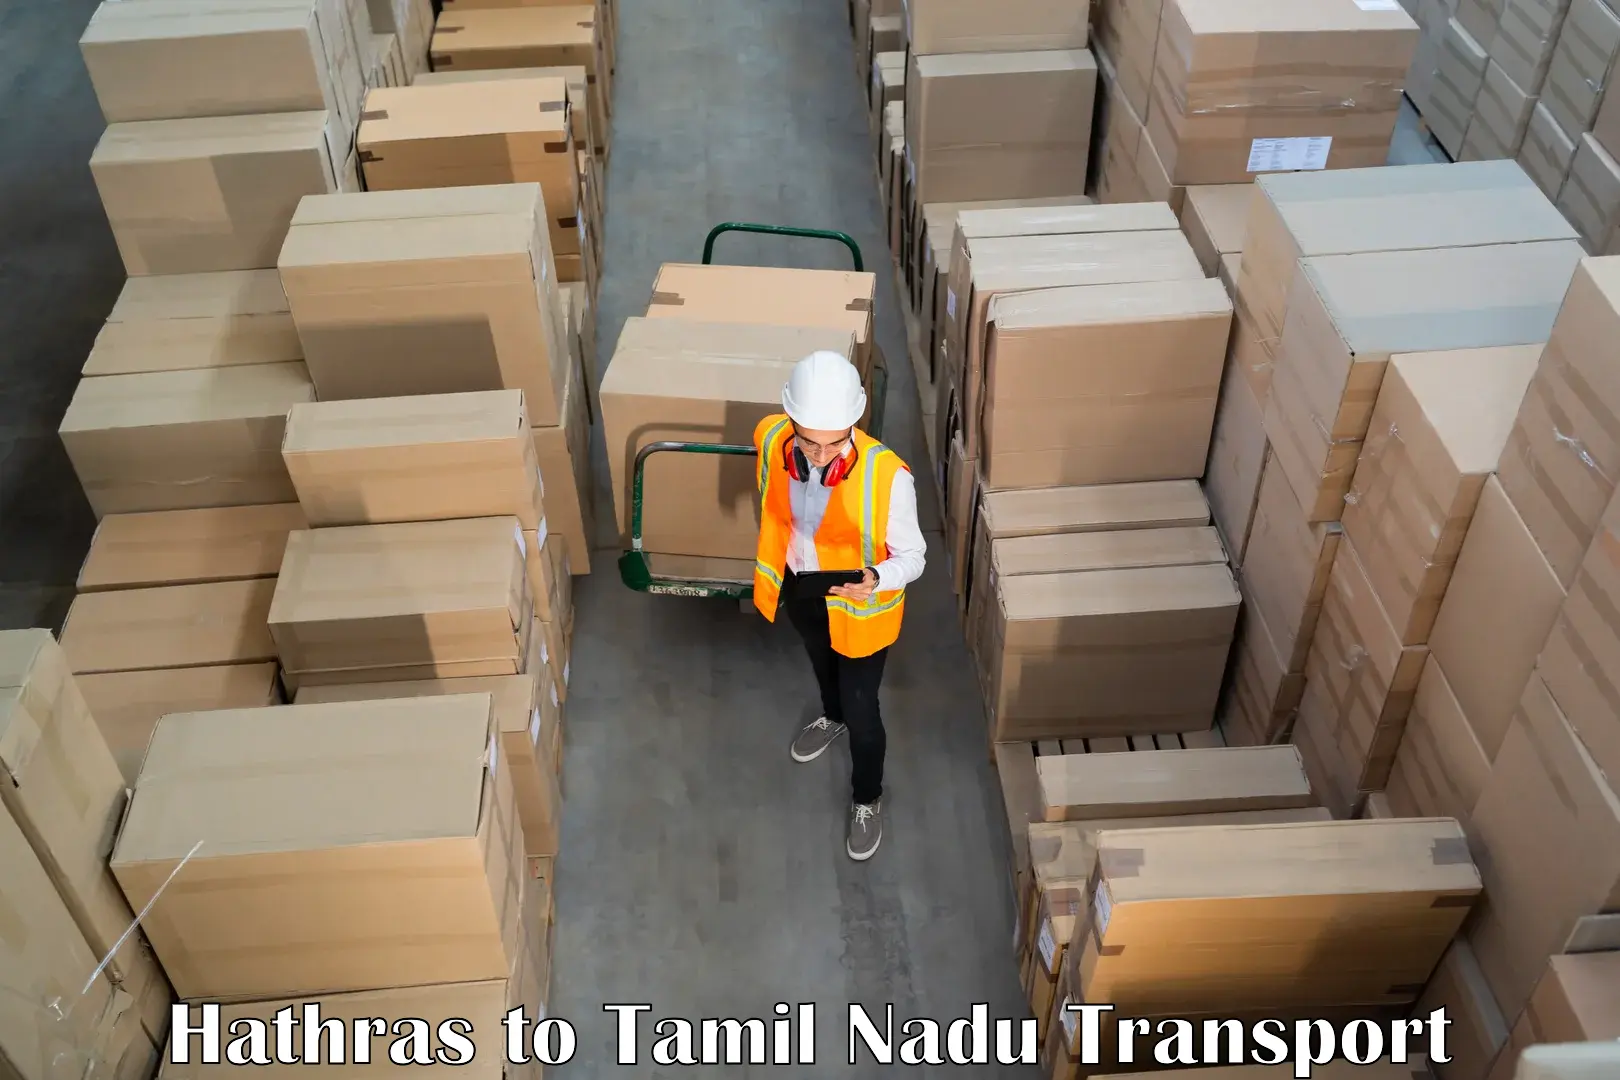 Cargo transport services Hathras to Vedasandur